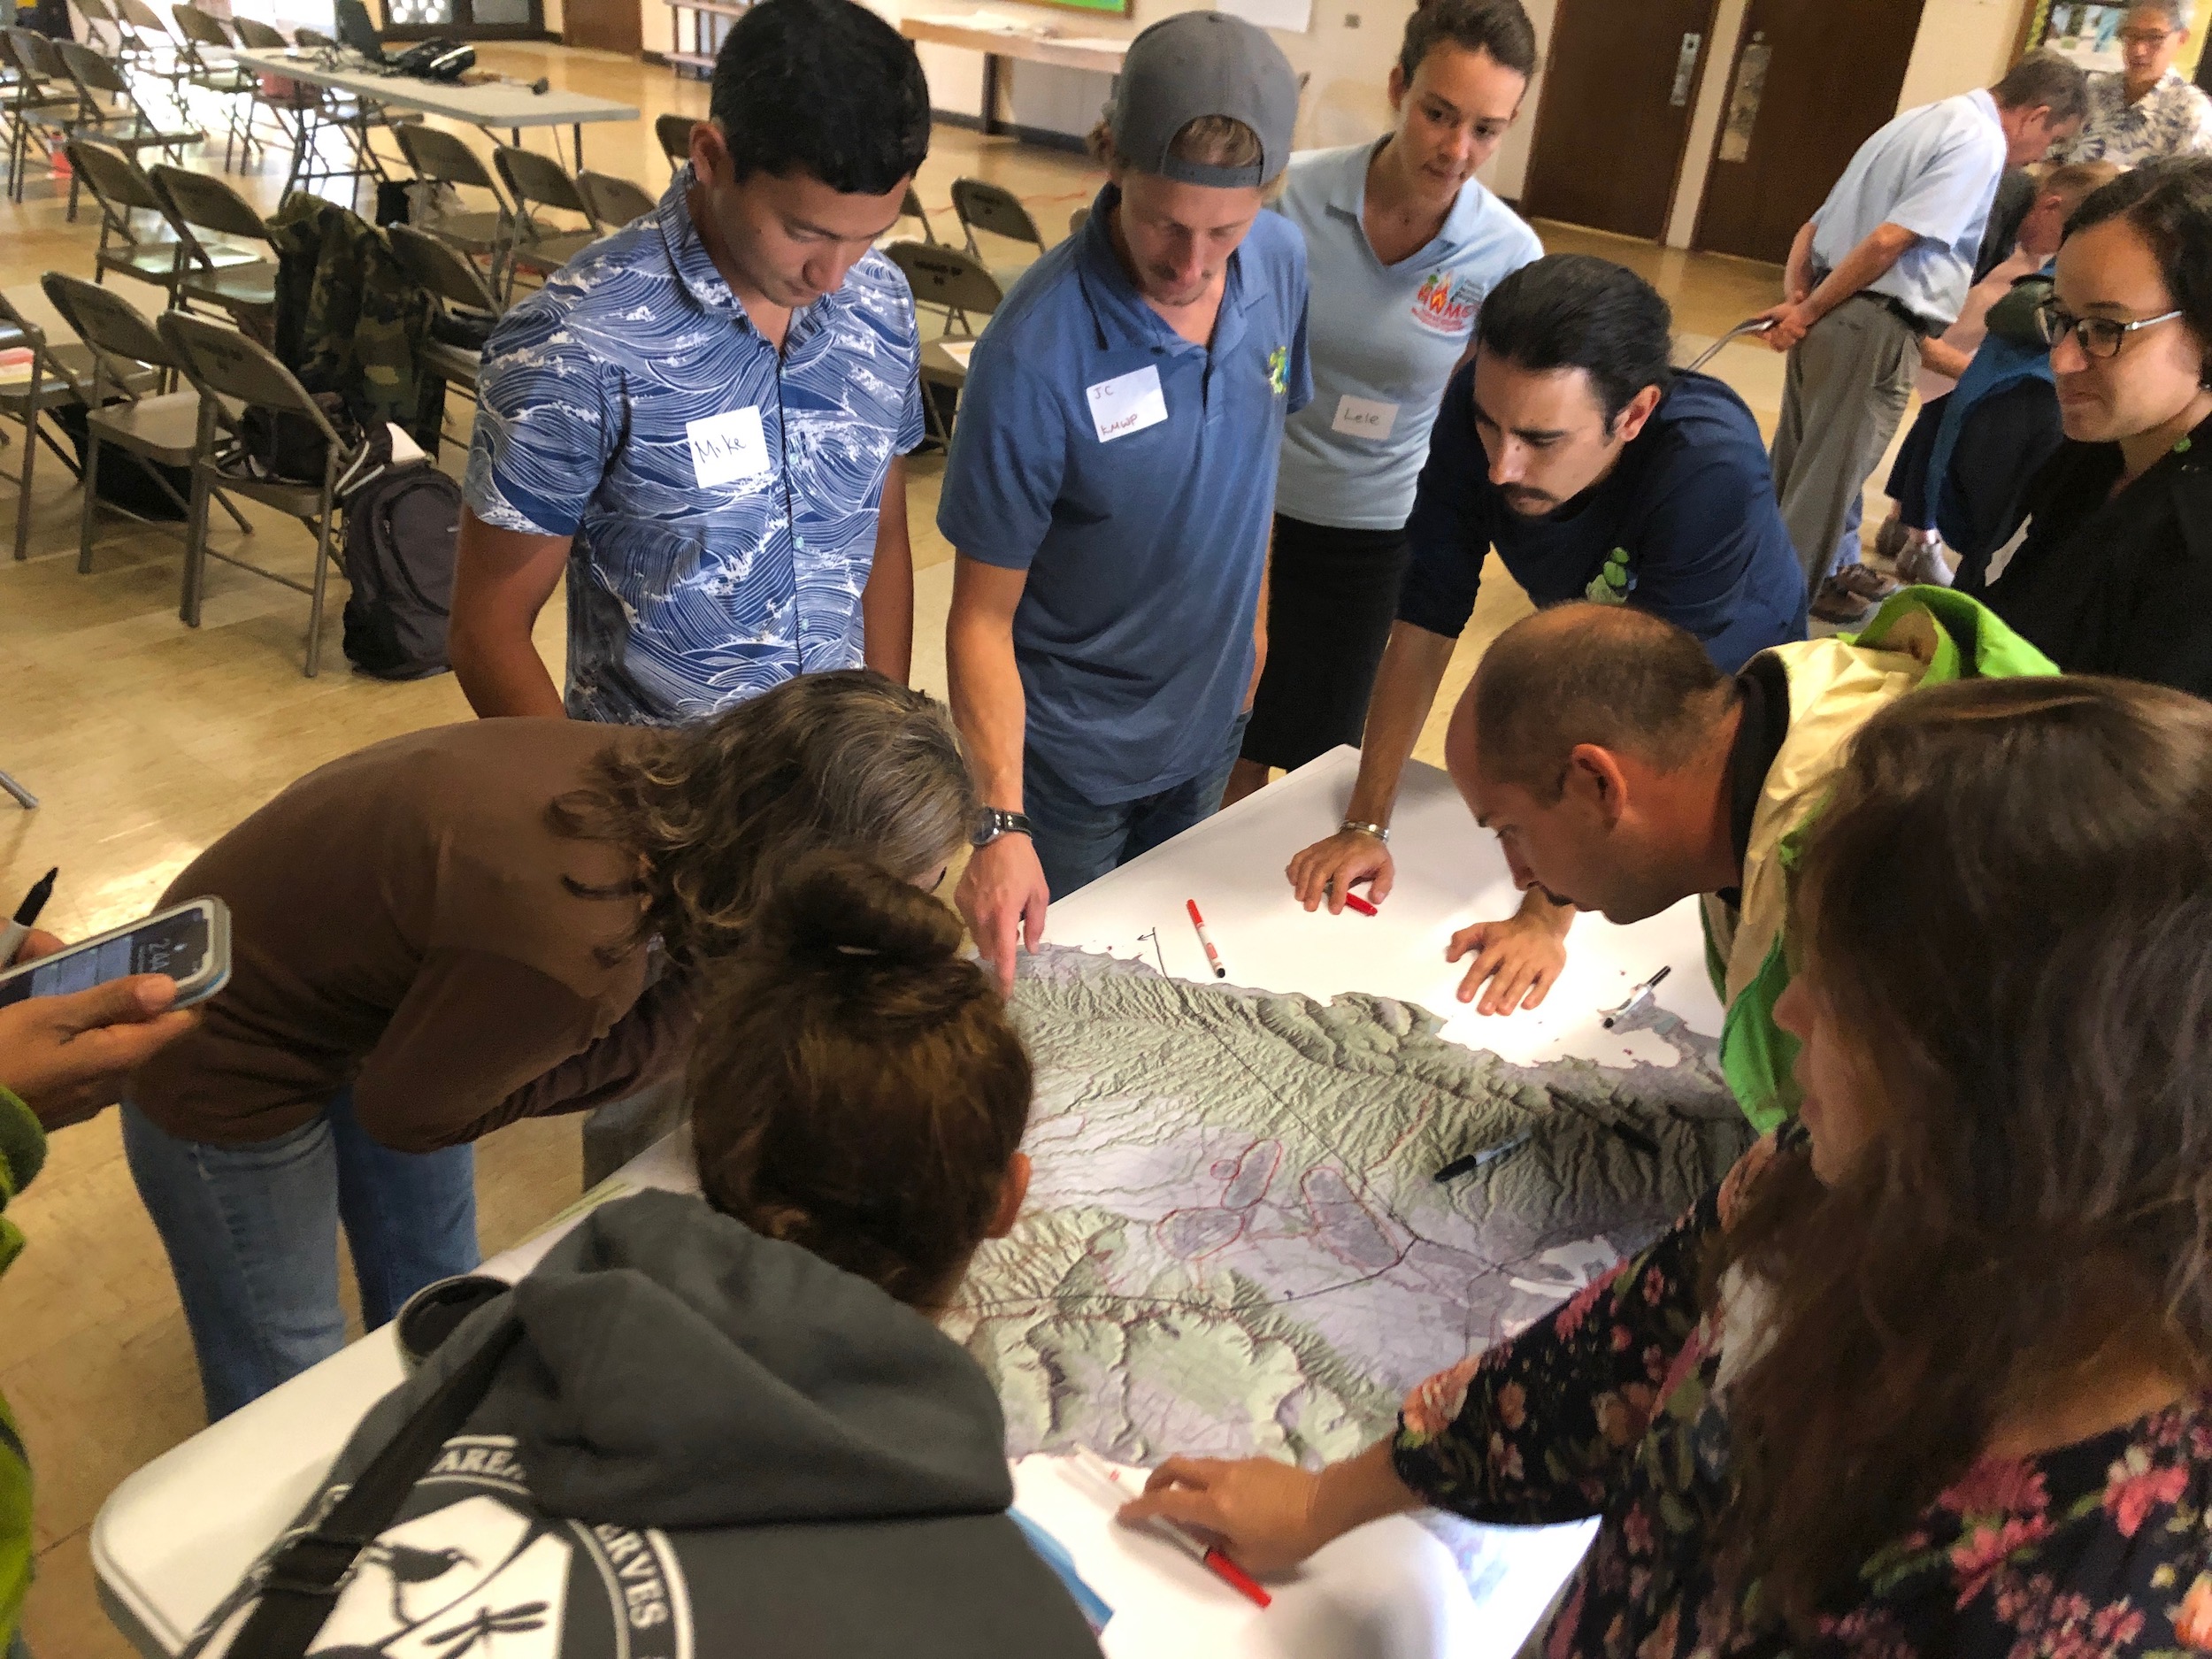 Oahu Vegetative Fuels Management Collaborative Action Planning Workshop_2_19_2019_11.jpg